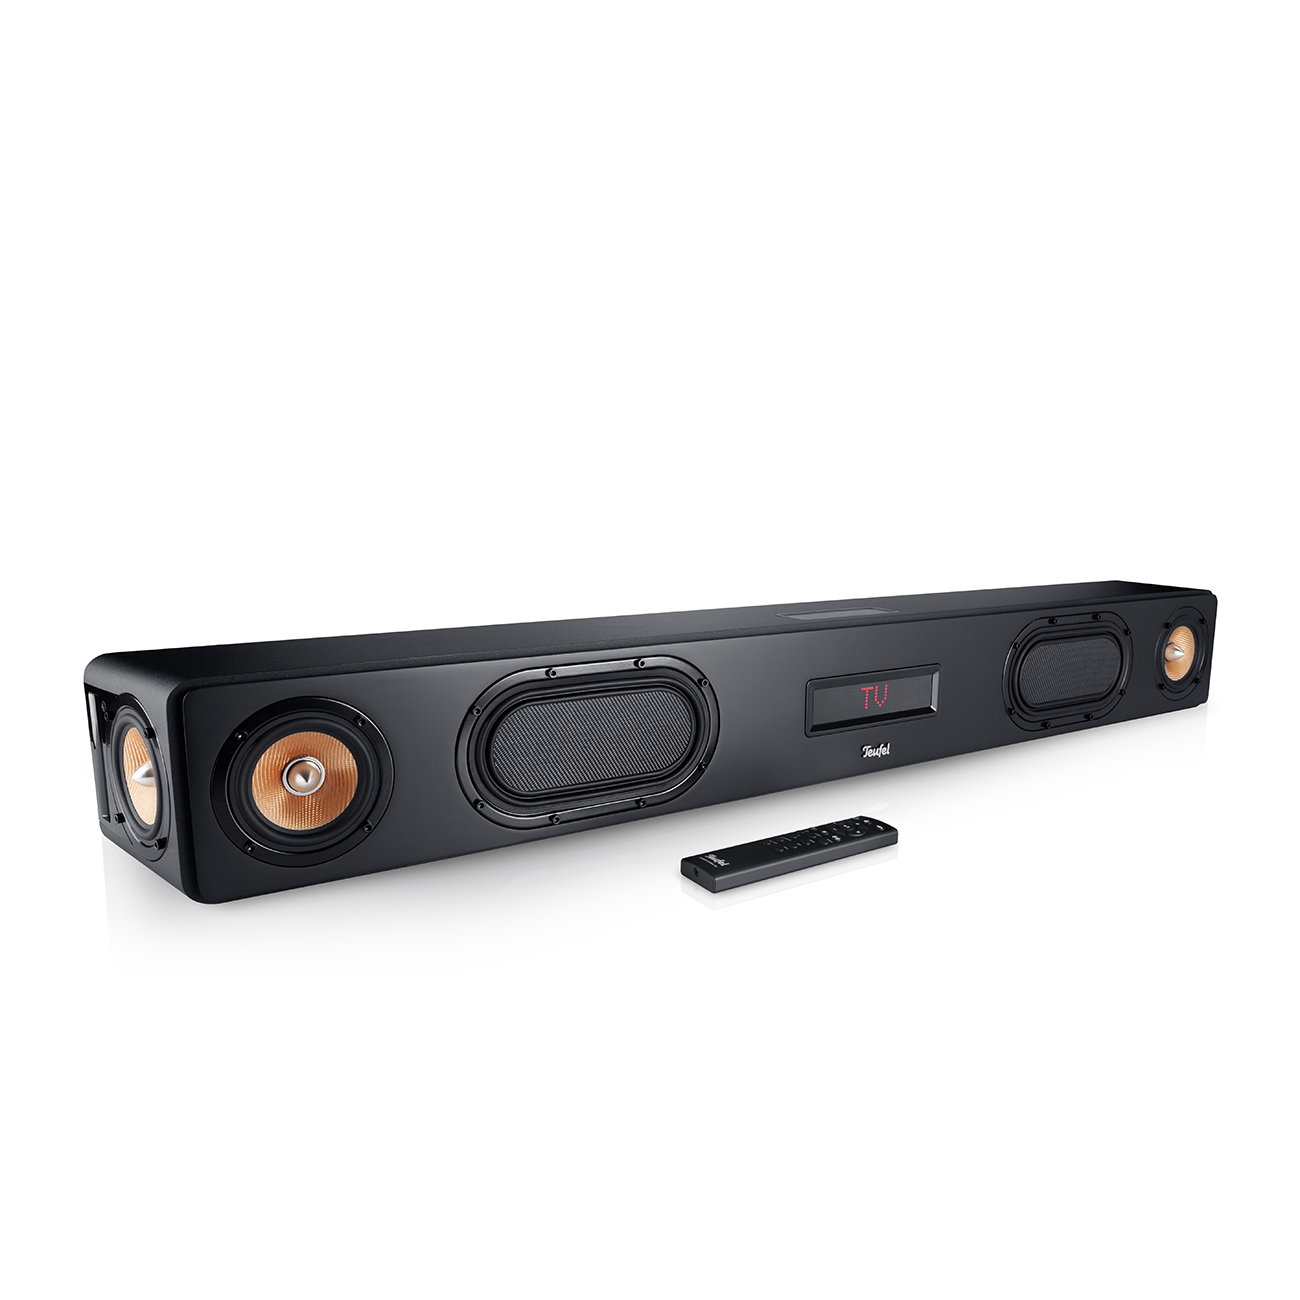 Barra de Sonido TV con Subwoofer,Home Cinema Barra Sonido,Tecnología DSP 3D  Bass Surround, 3 Modos de Audio, Bluetooth/AUX/RCA/USB/óptico